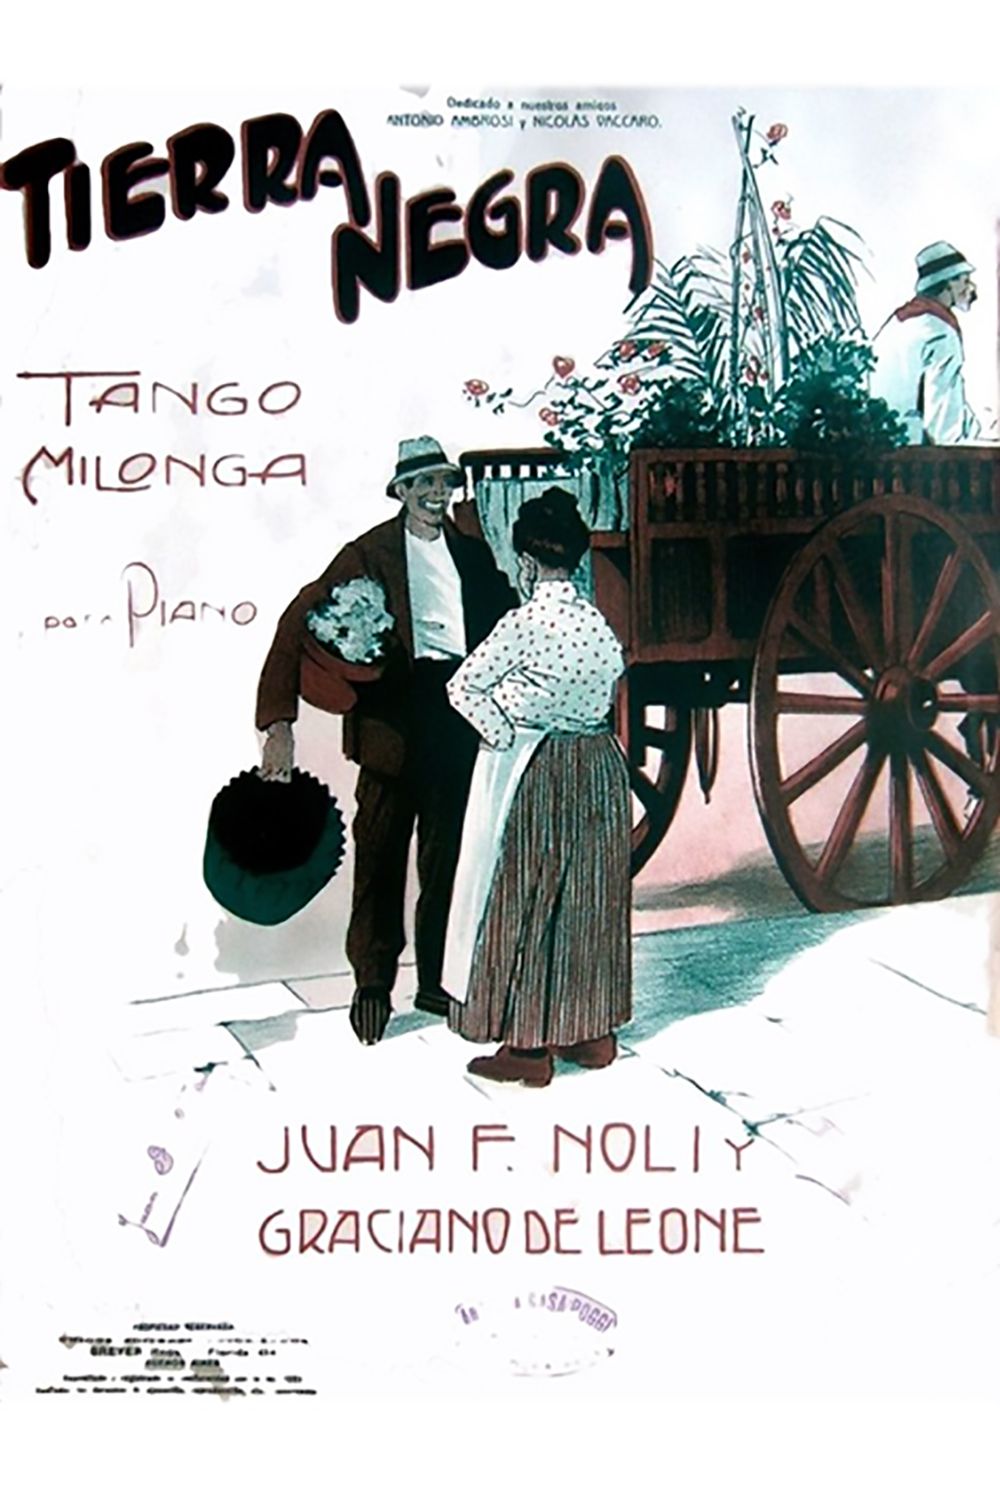 "Tierra Negra" music sheet cover. Argentine Tango music.